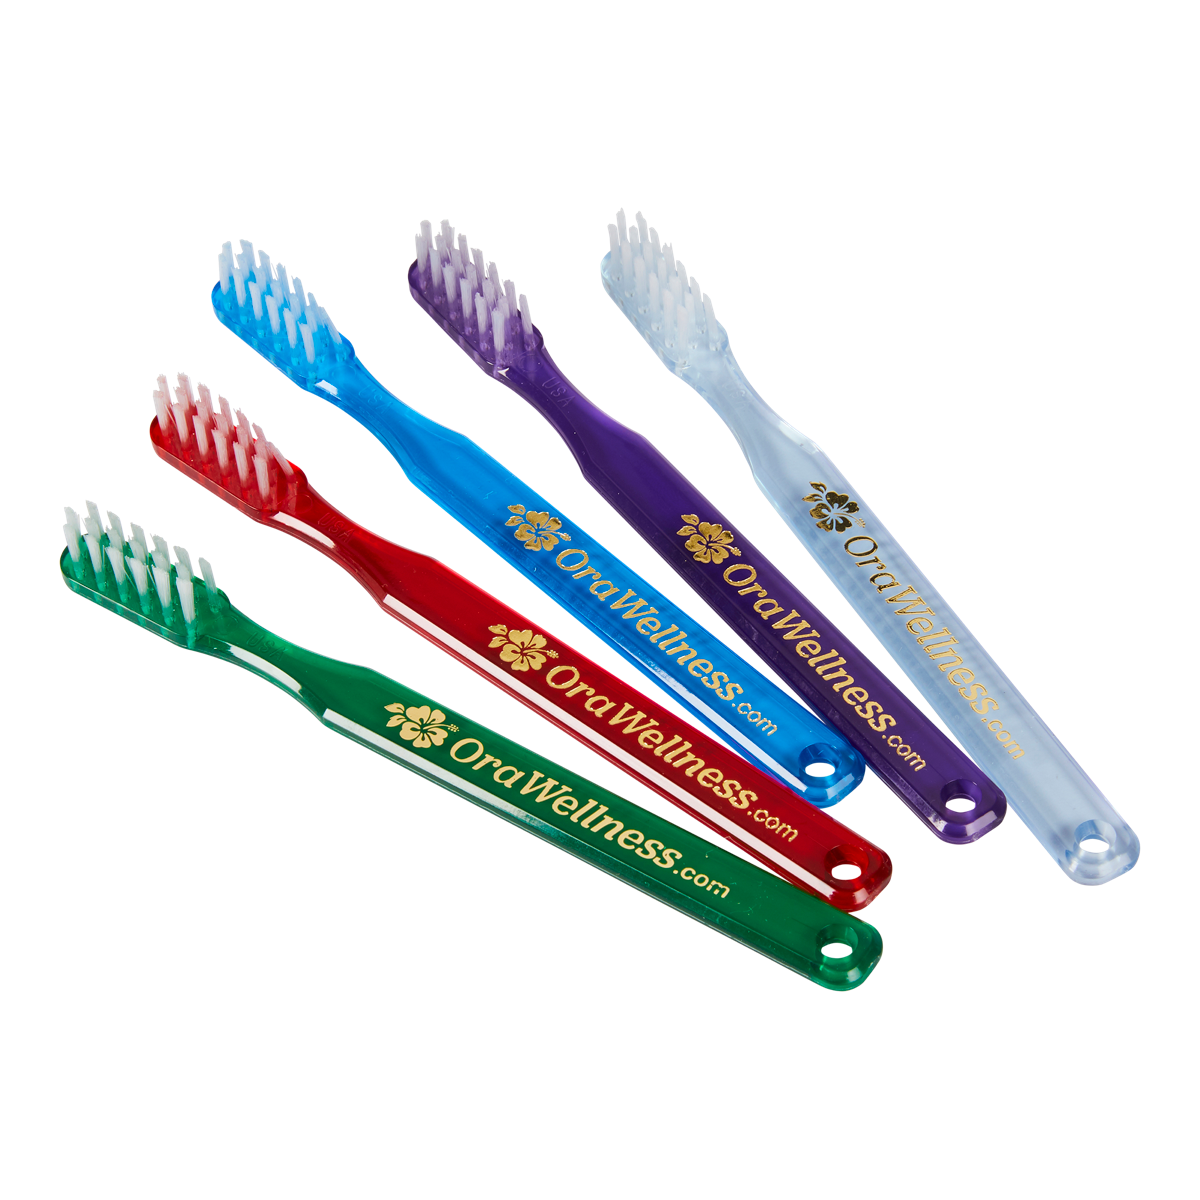 Hjælp jord længes efter Bass Toothbrush - a special design proven to reduce gum disease –  OraWellness.com